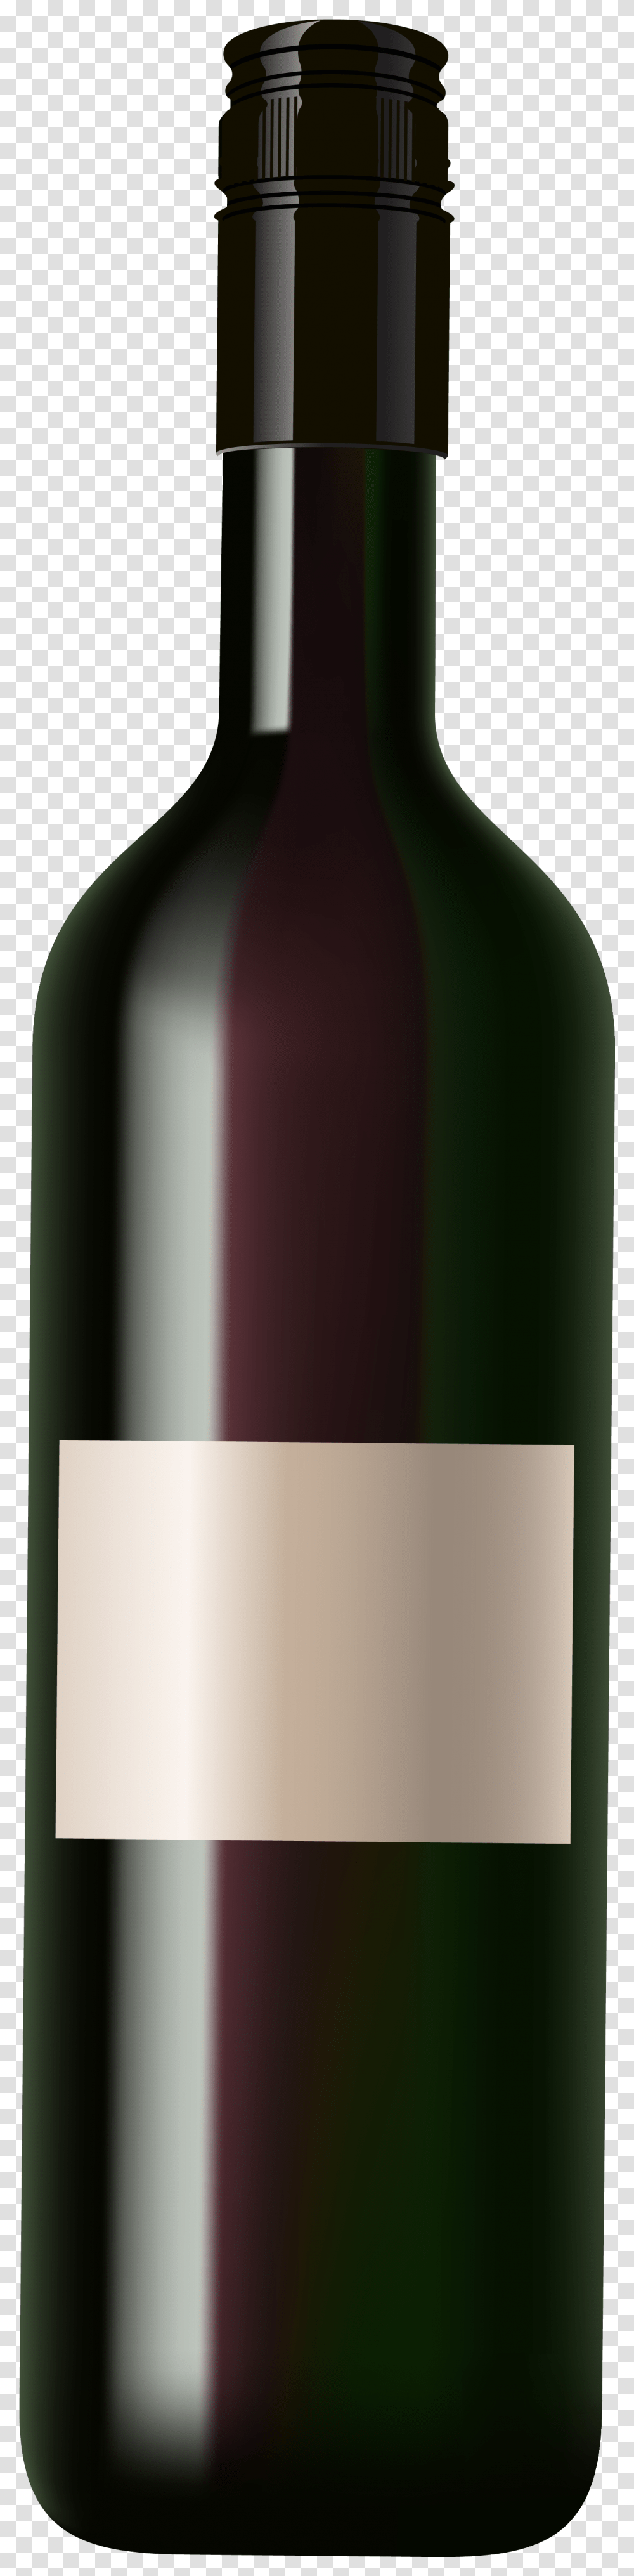 Wine Bottle Clip Art Image Wine Bottle Clip Art, Alcohol, Beverage, Drink, Red Wine Transparent Png